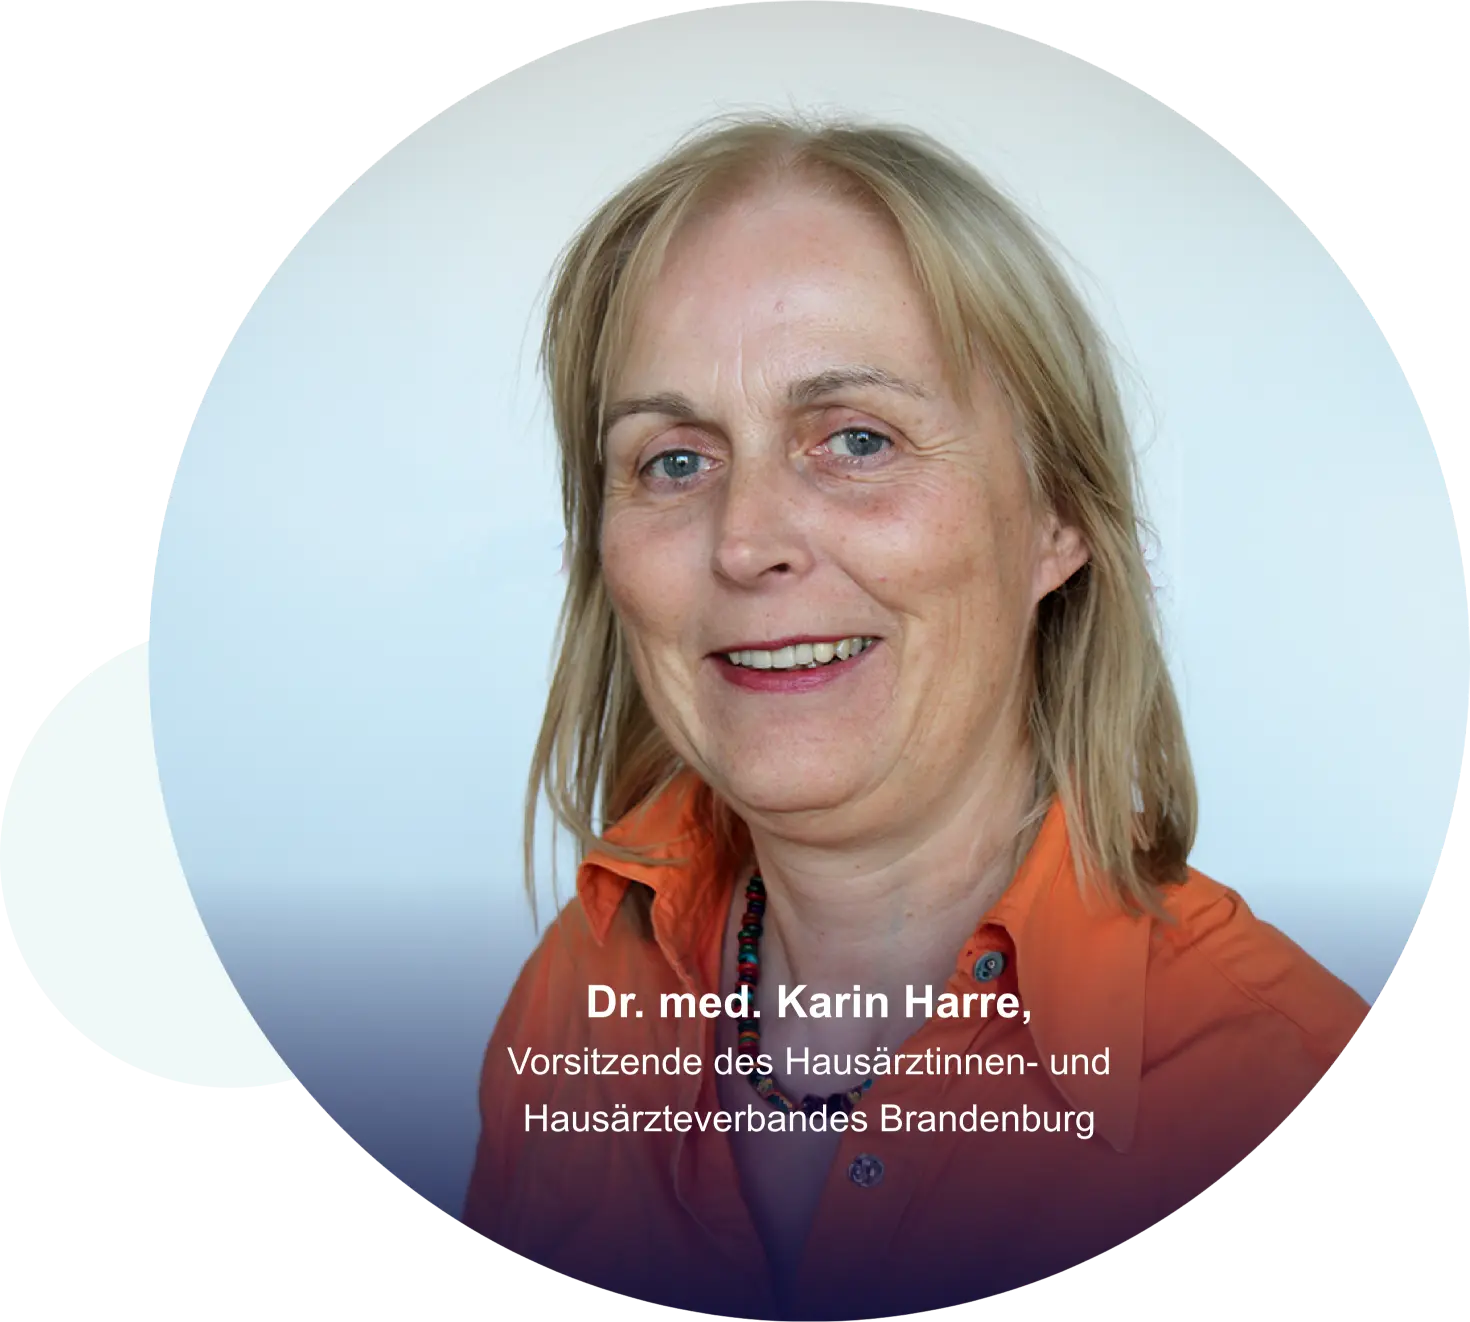 Dr. med. Karin Harre